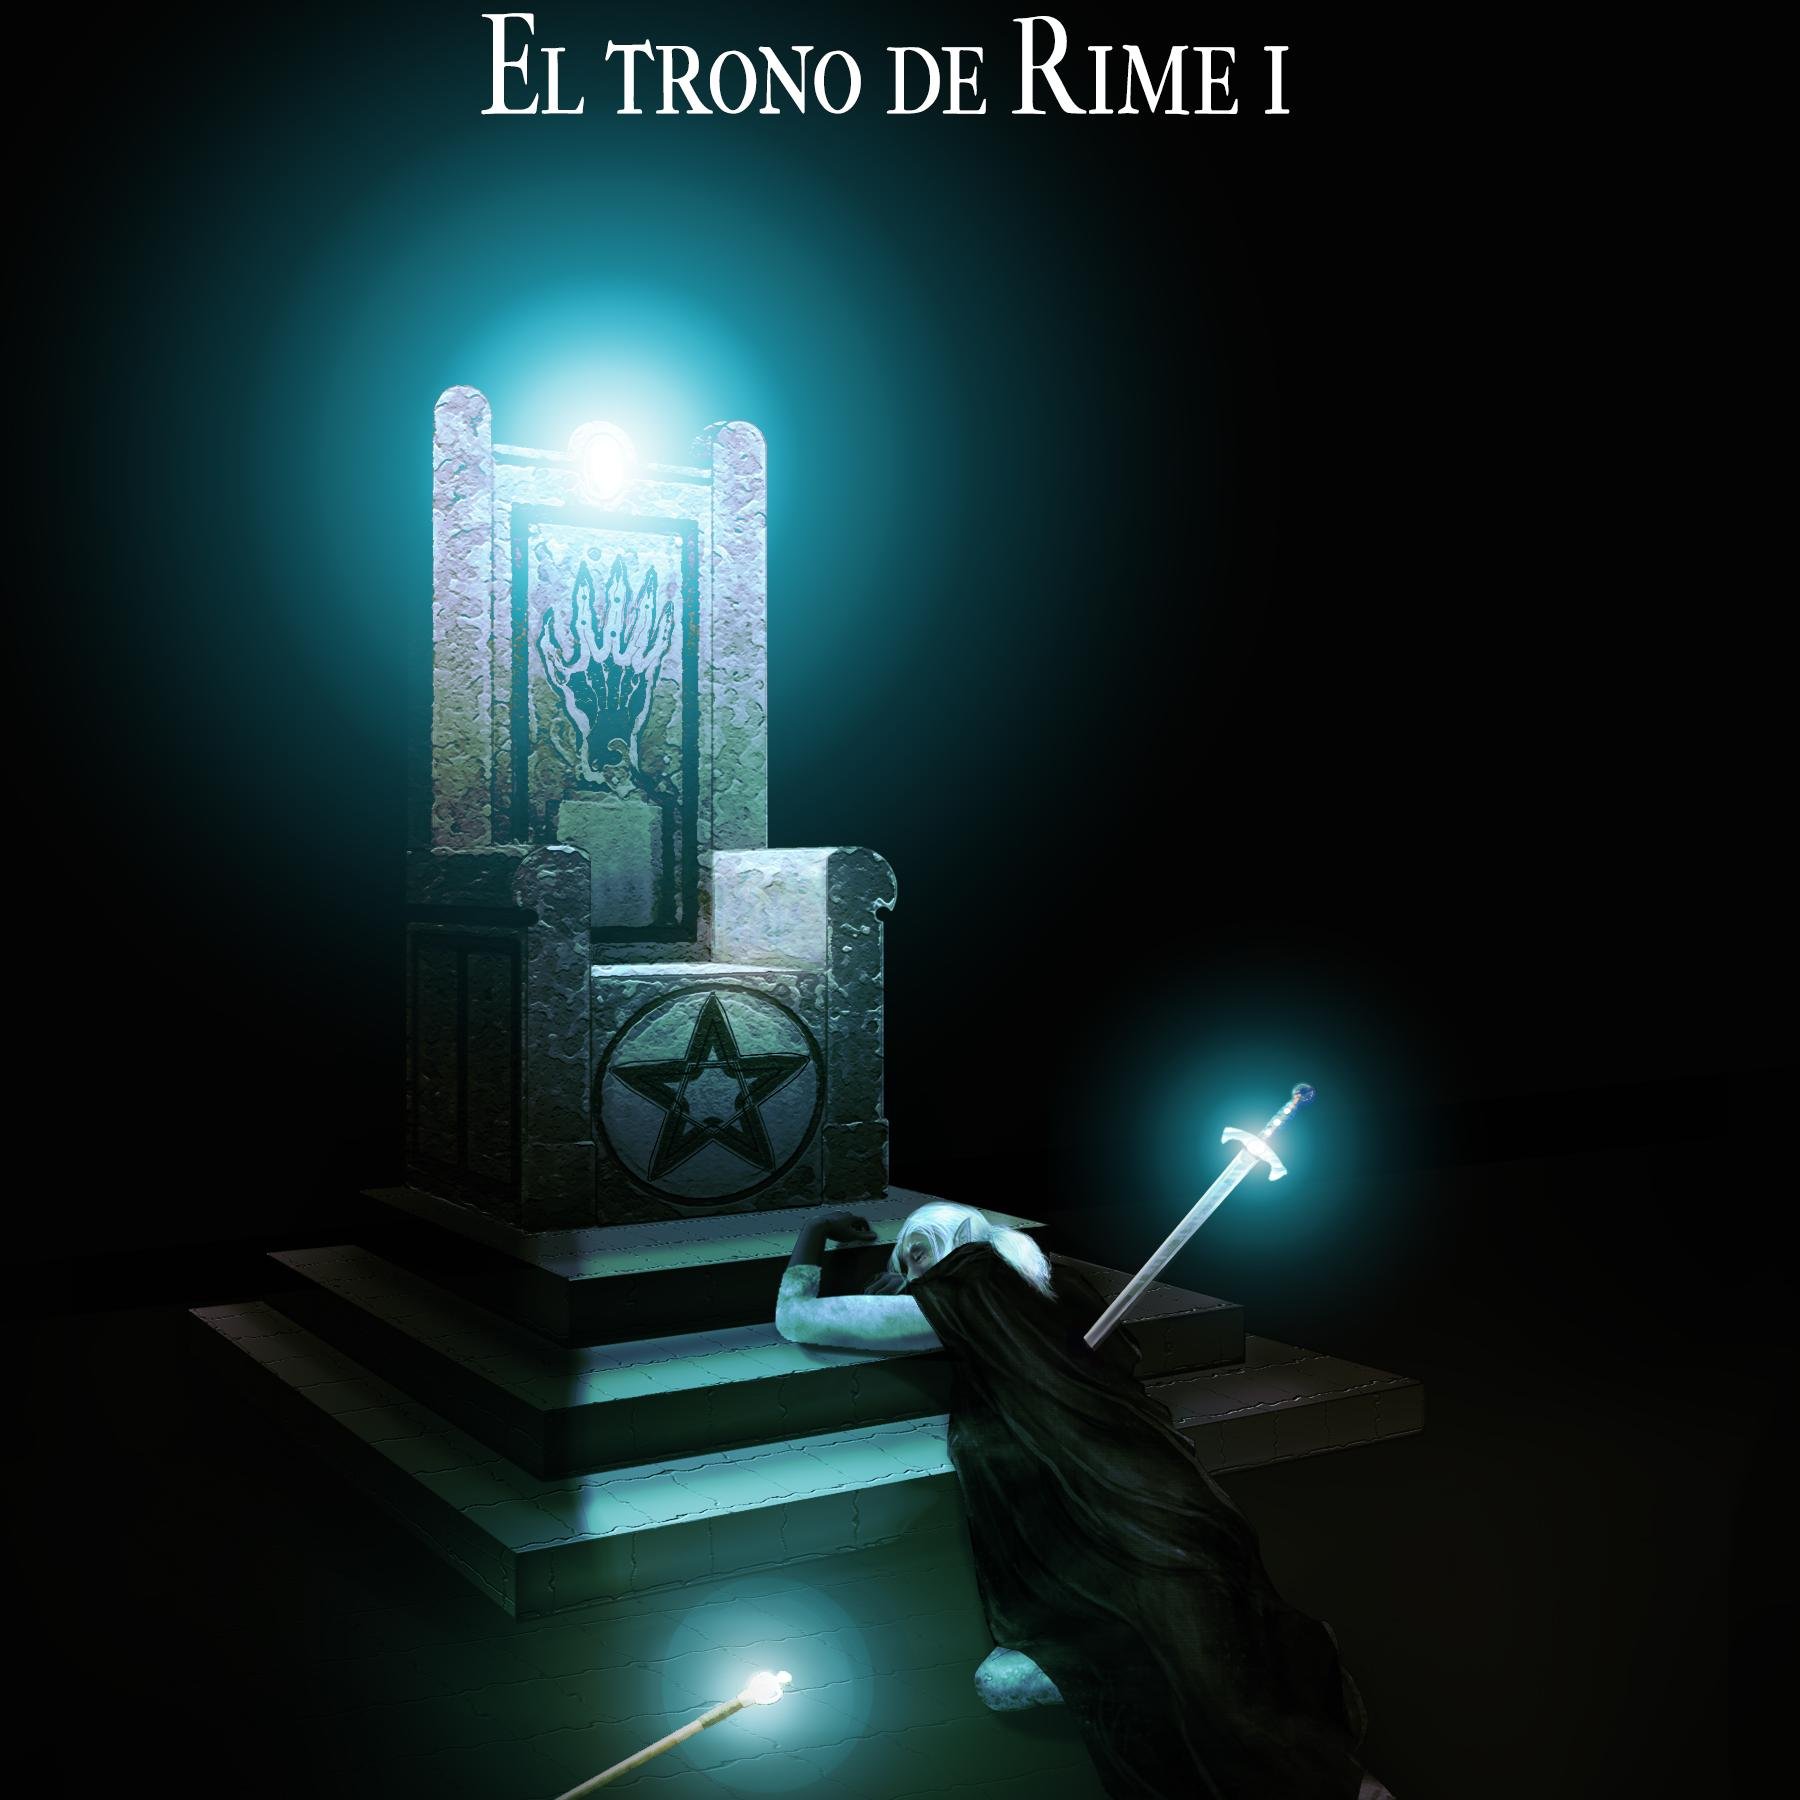 Escribo fantasía épica. Soy autor de La Edad Oscura e Islerra, primeras dos entregas de la saga El trono de Rime, y un par de otros libros y cuentos.